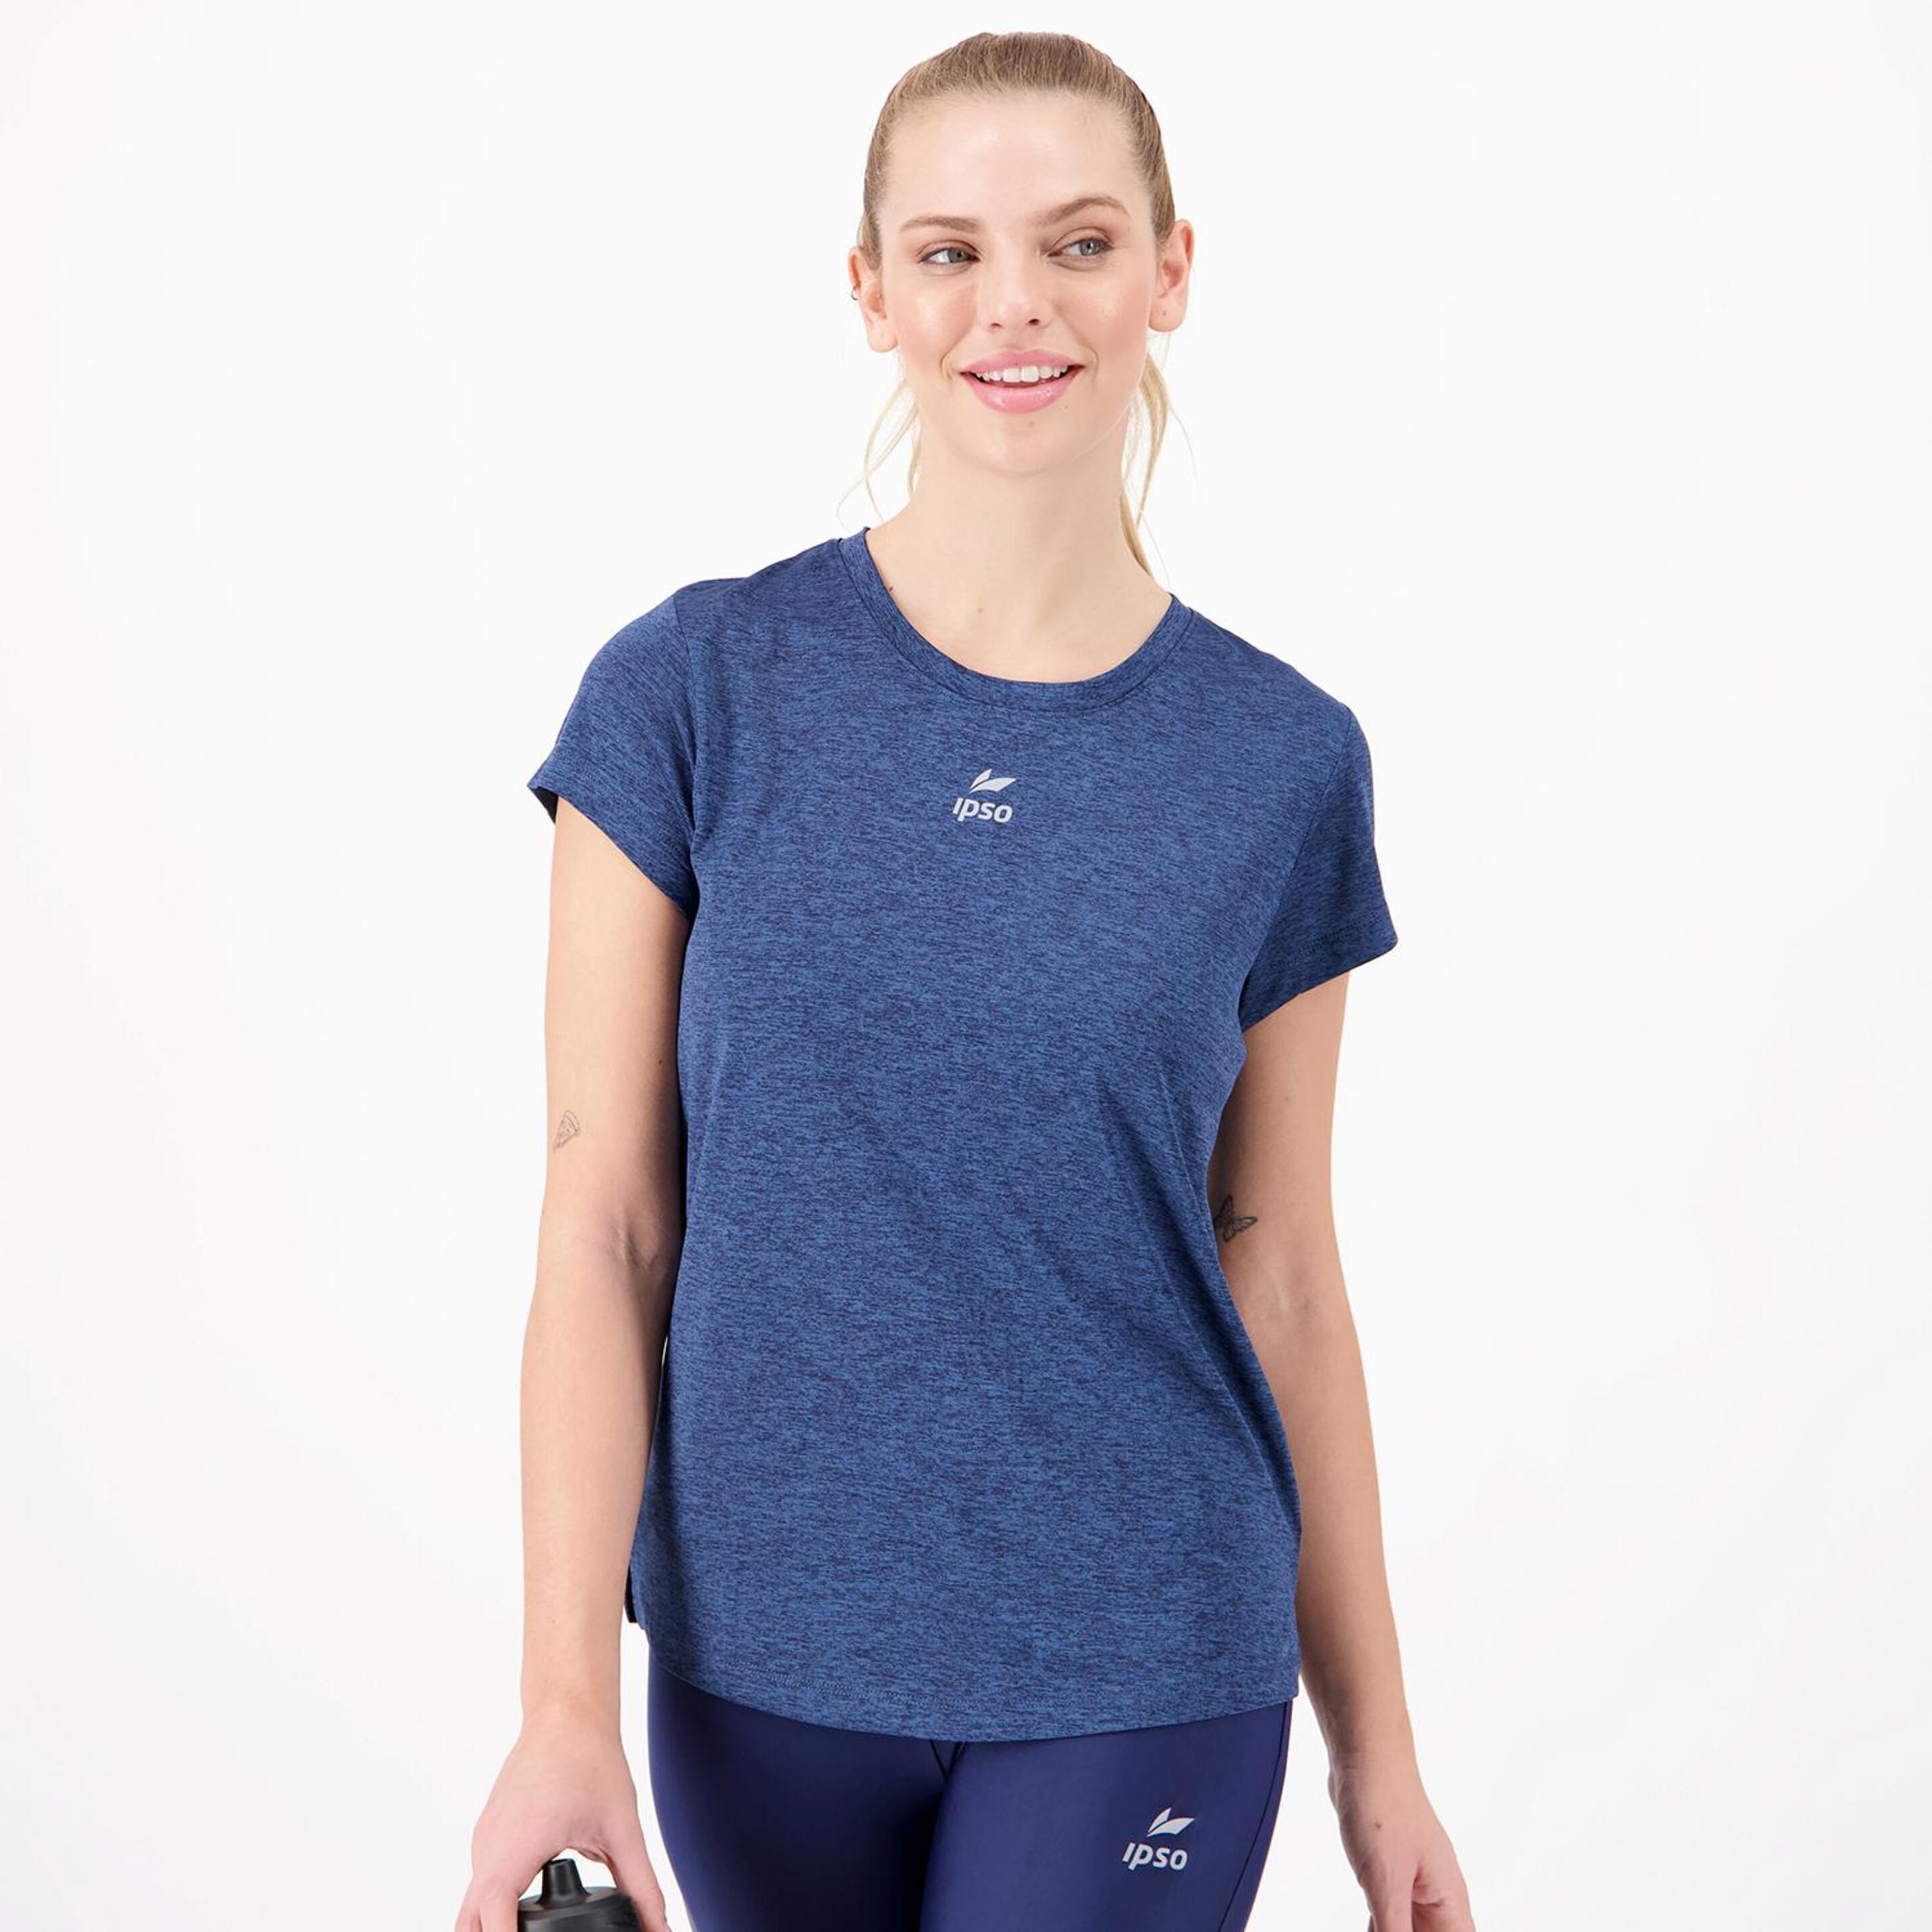 Ipso Combi - azul - Camiseta Running Mujer